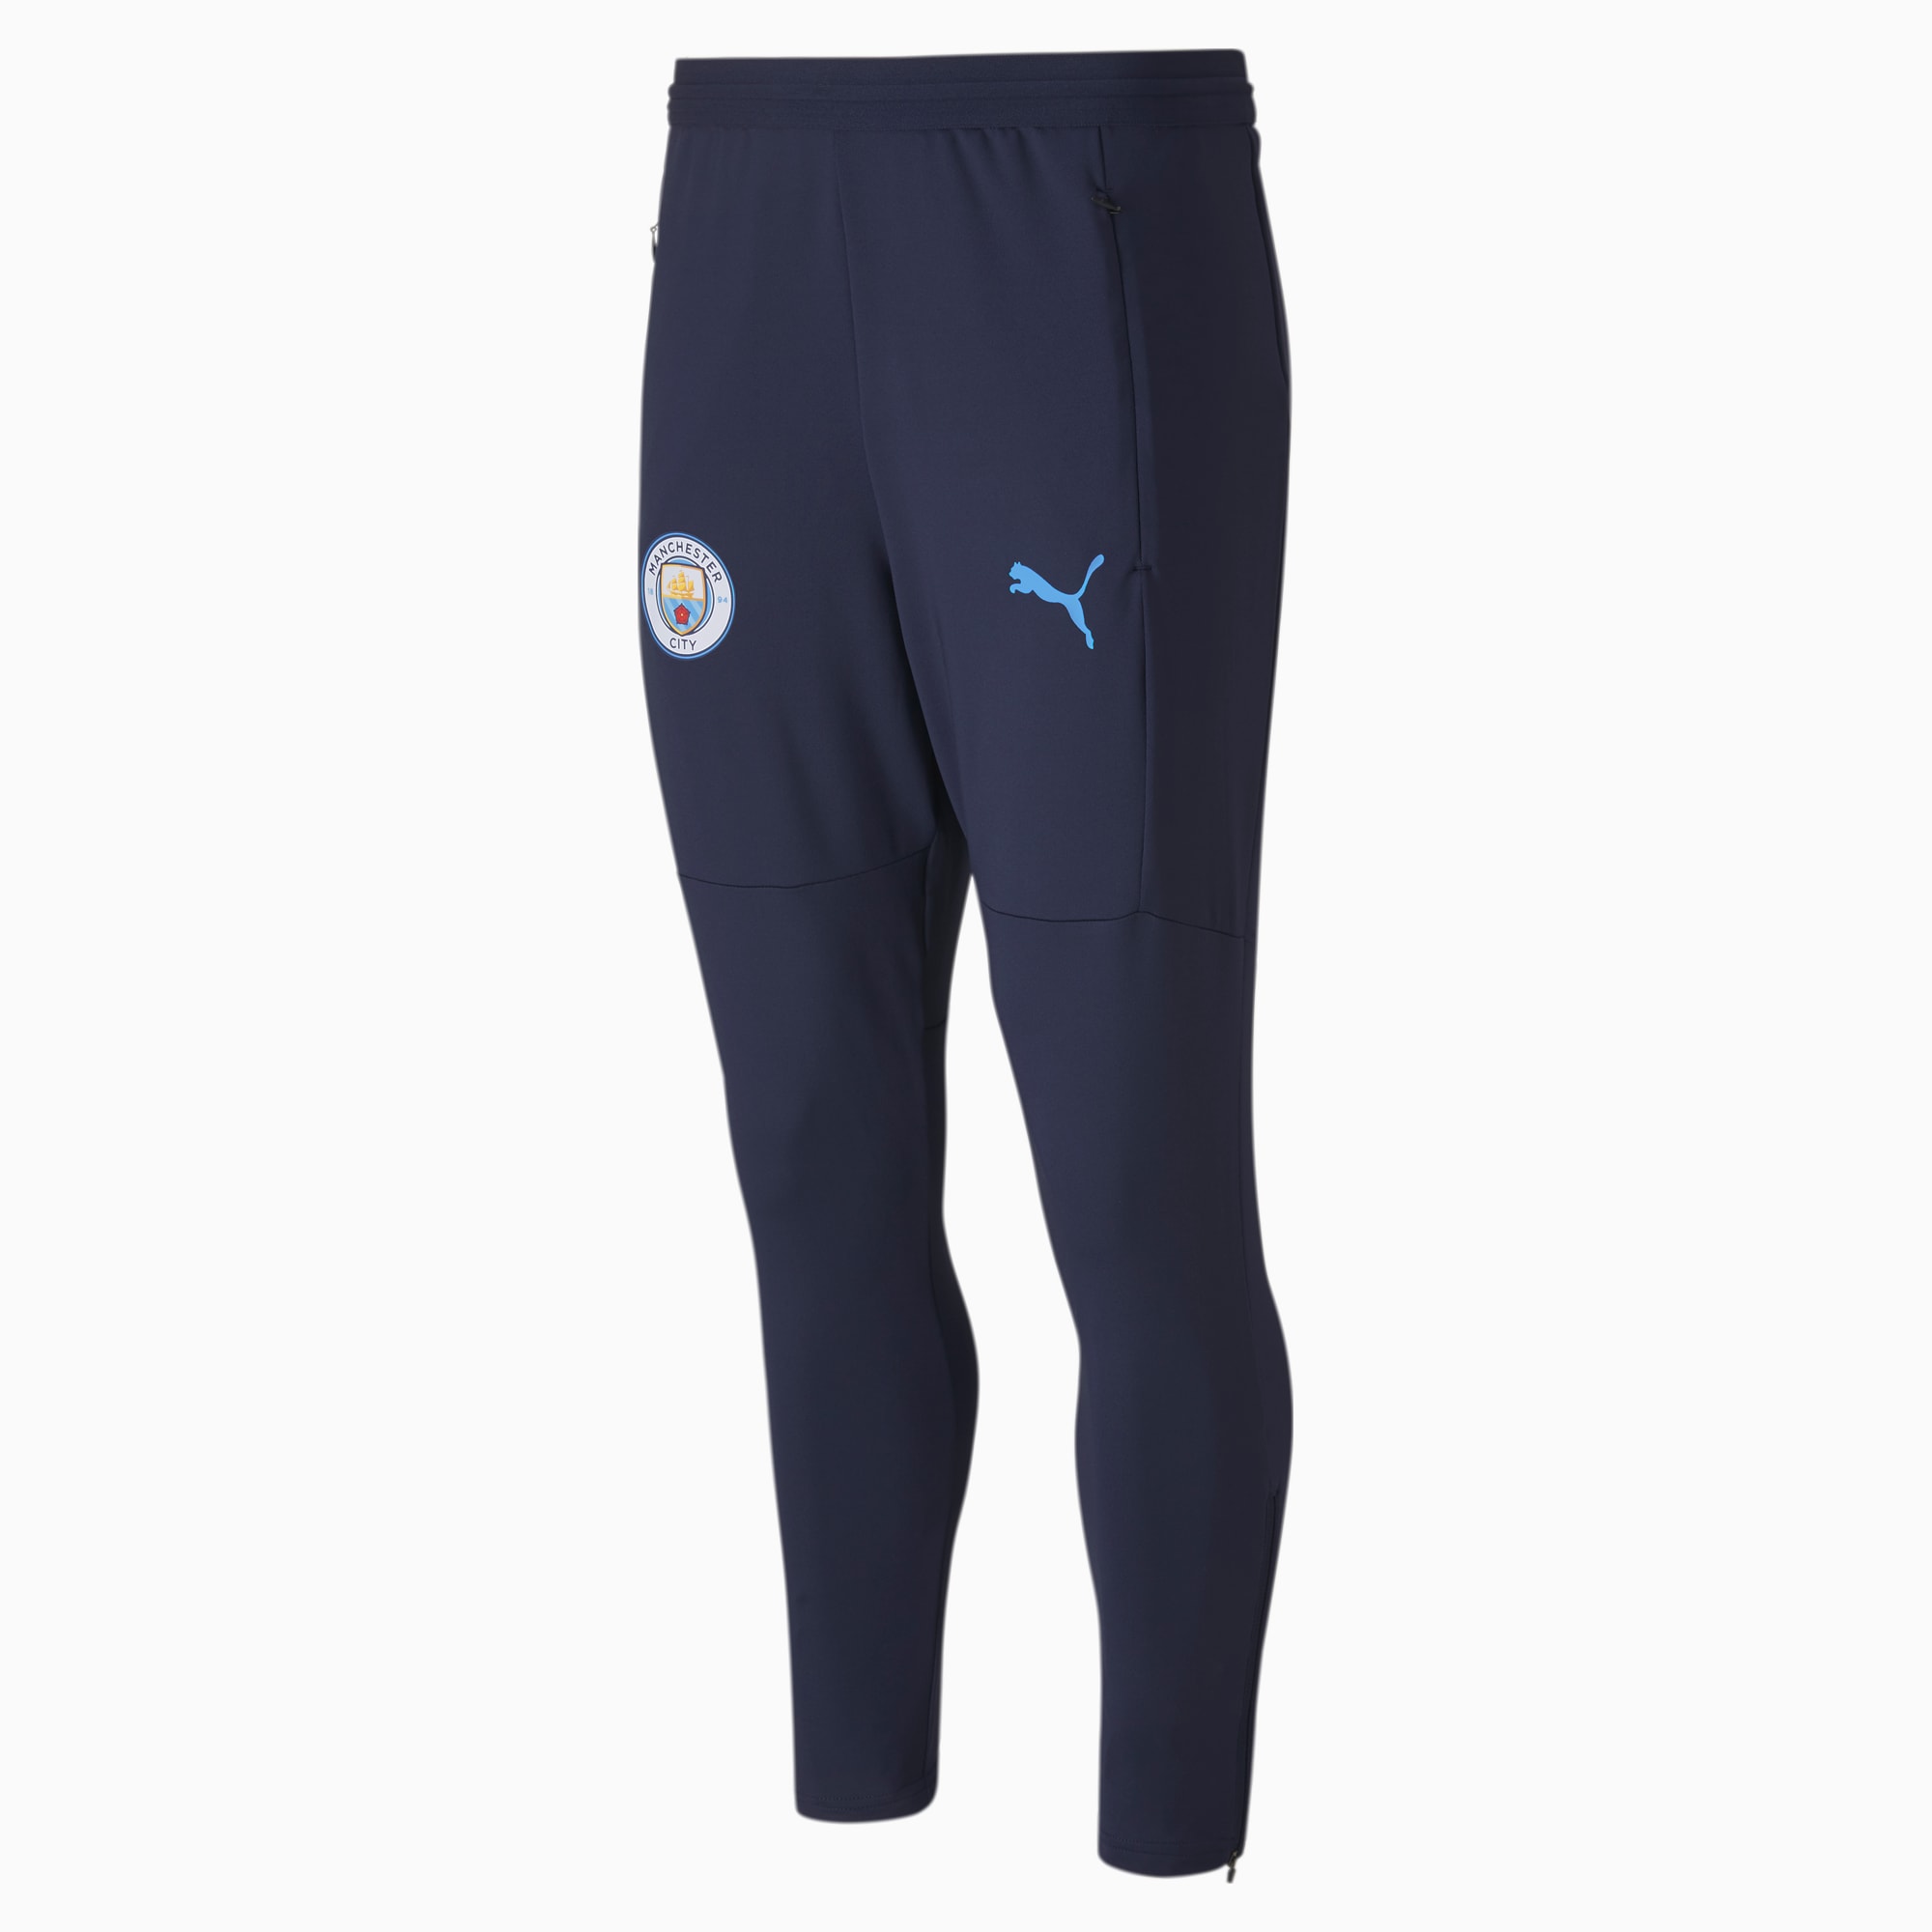 Manchester City FC Men's Warm Up Pants